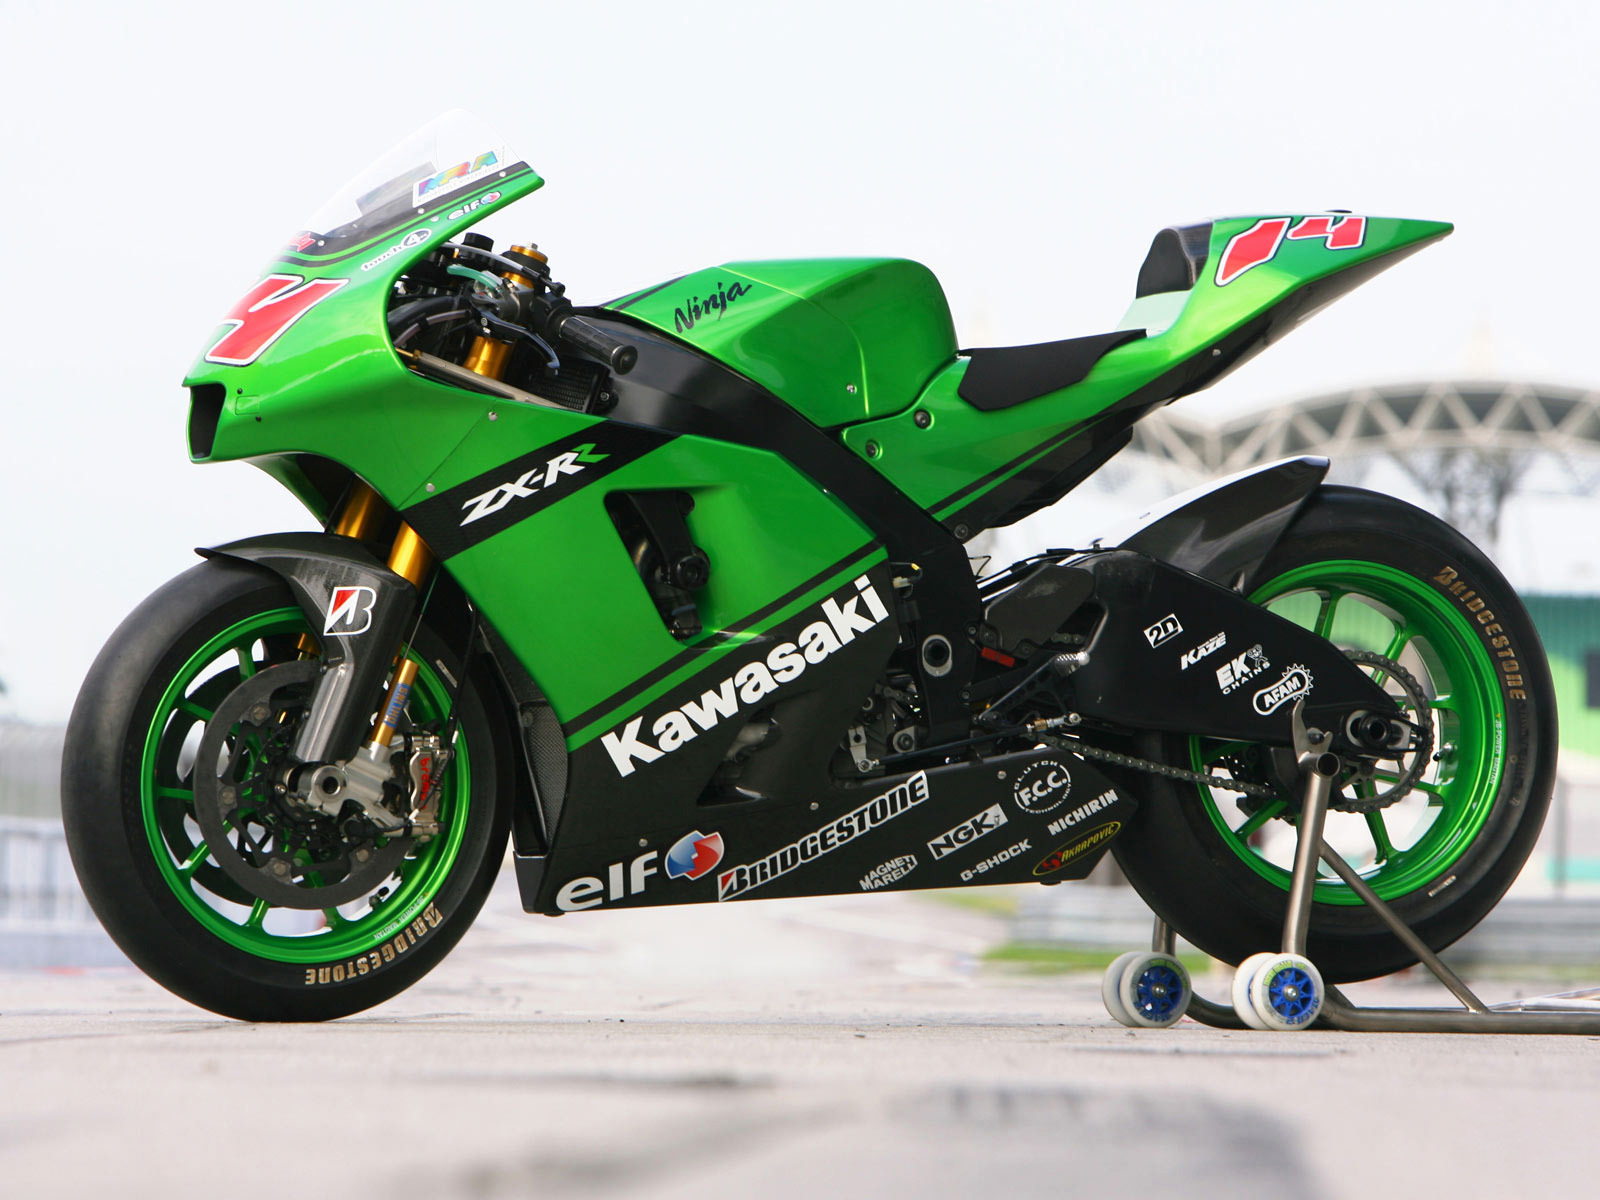 100 Gambar Motor Ninja Rr Kawasaki Terlengkap Obeng Motor